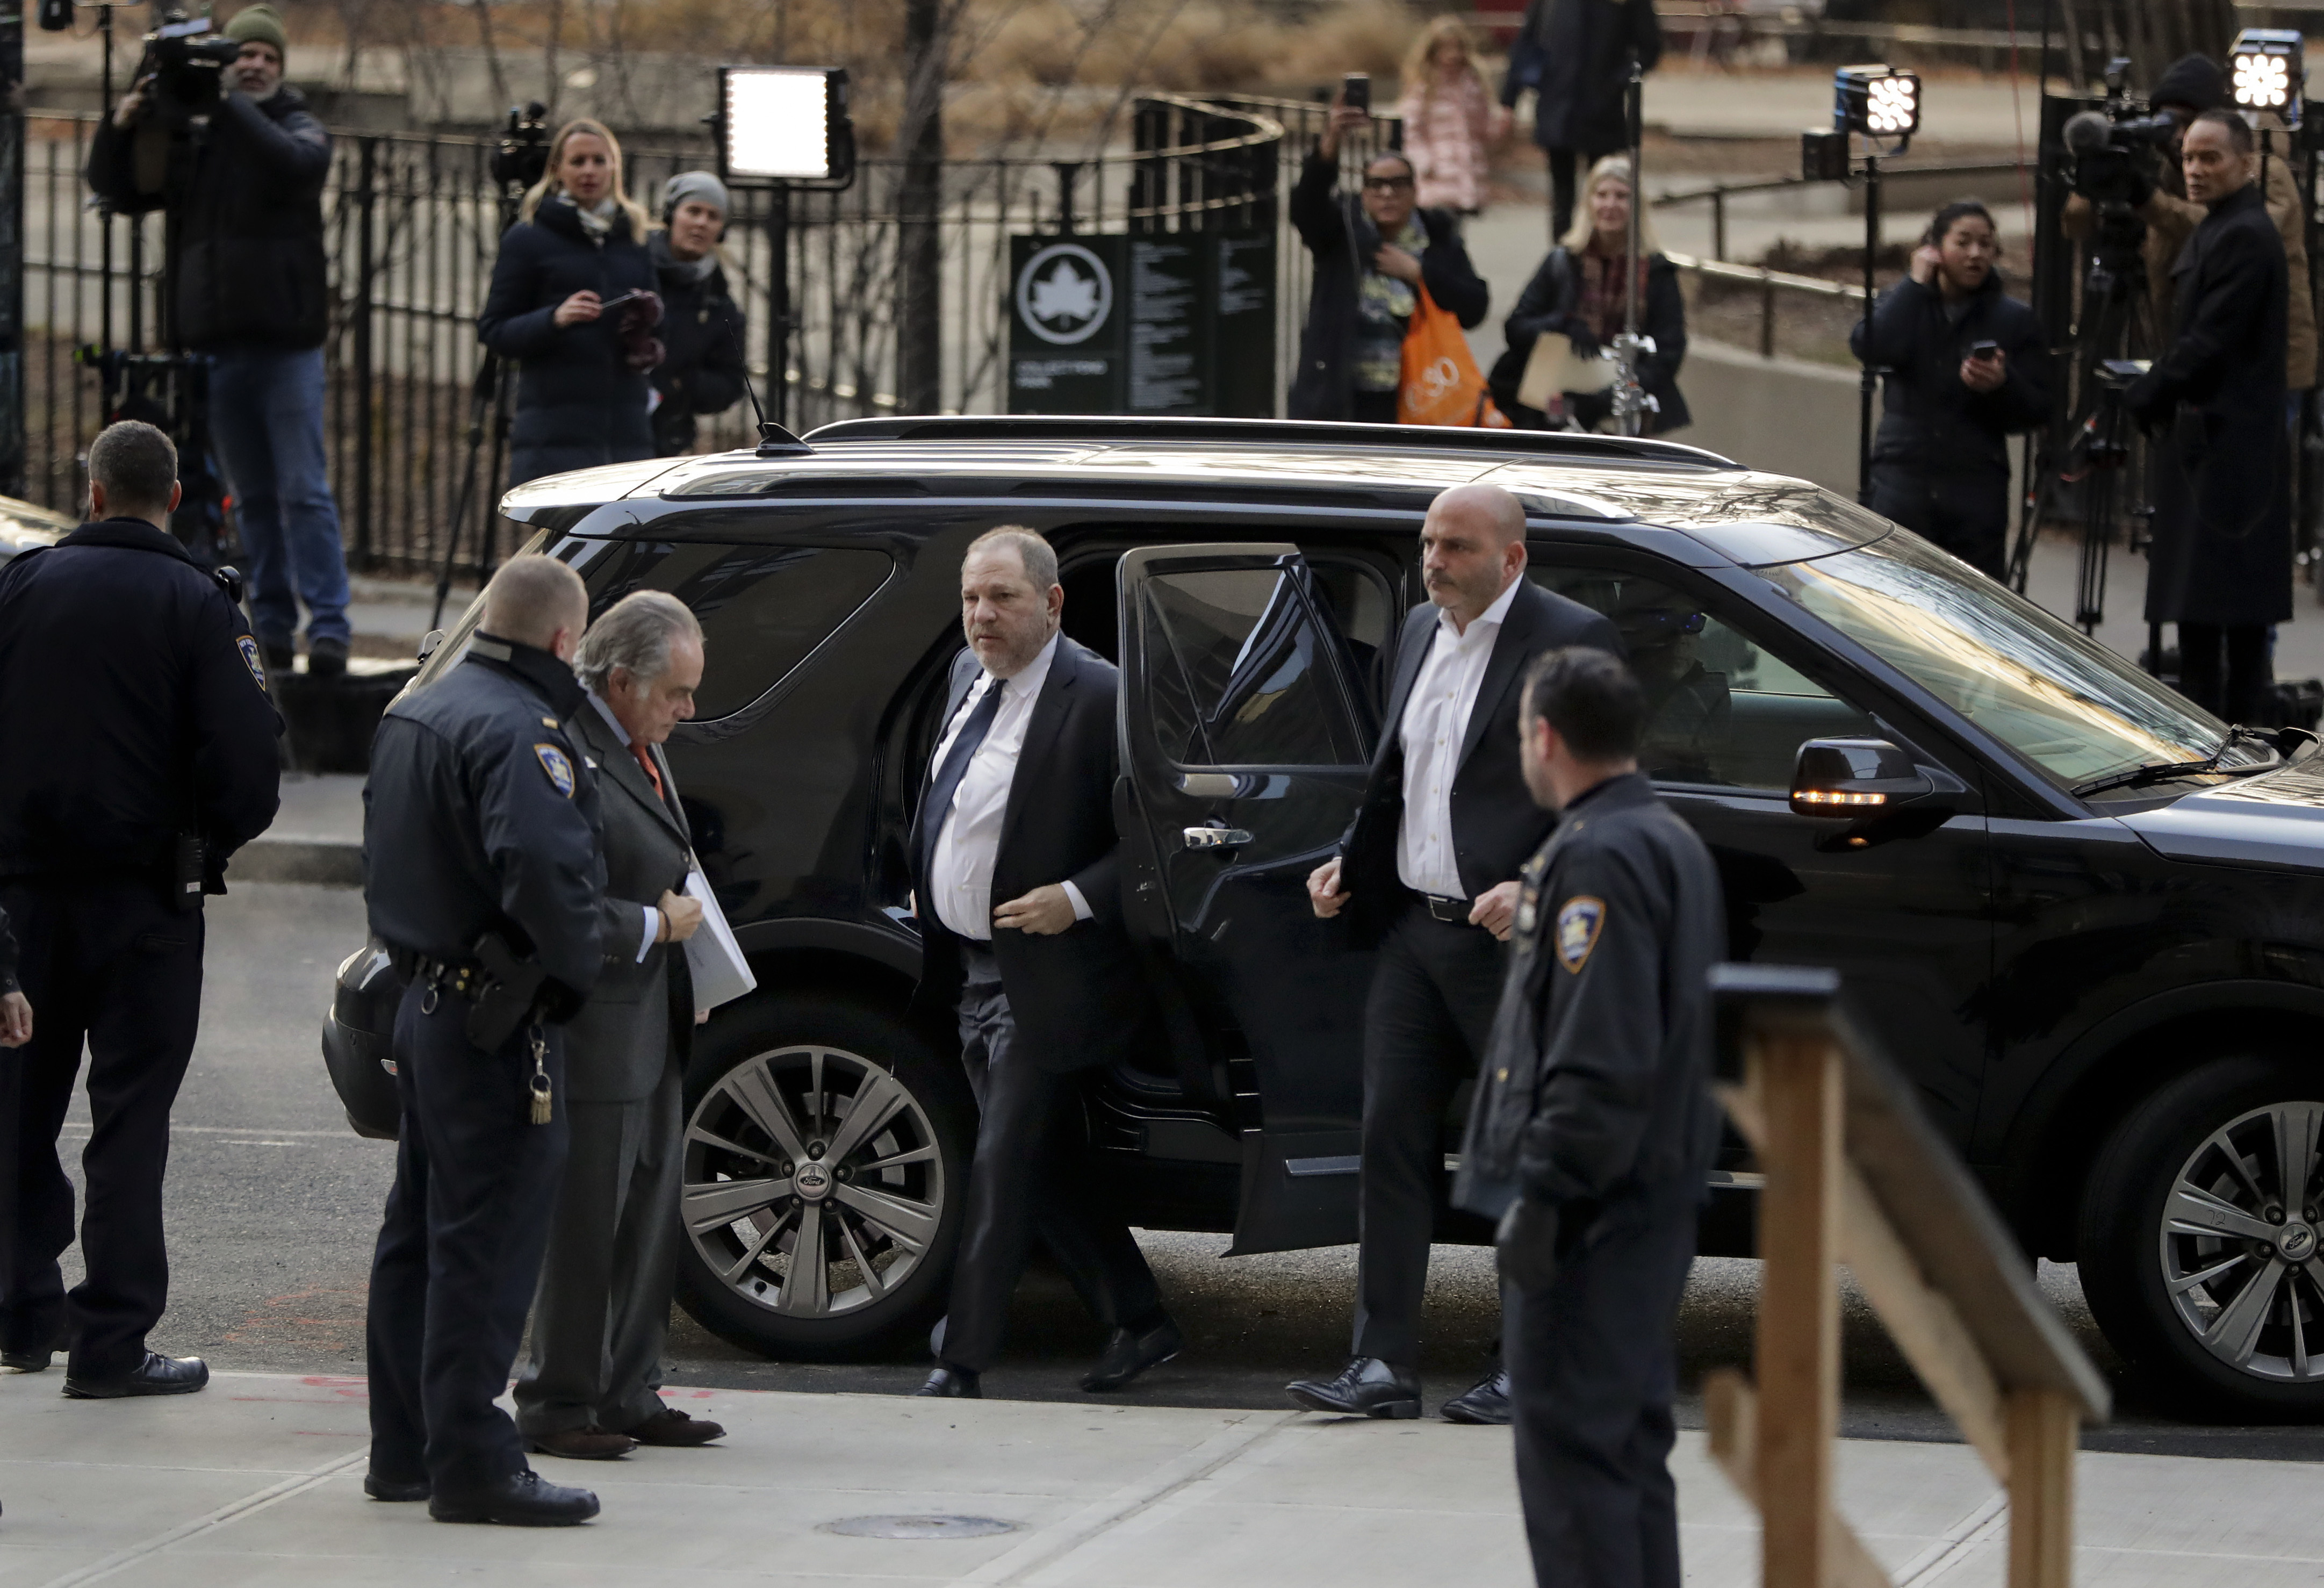 Harvey Weinstein arrives at New York Supreme Court 